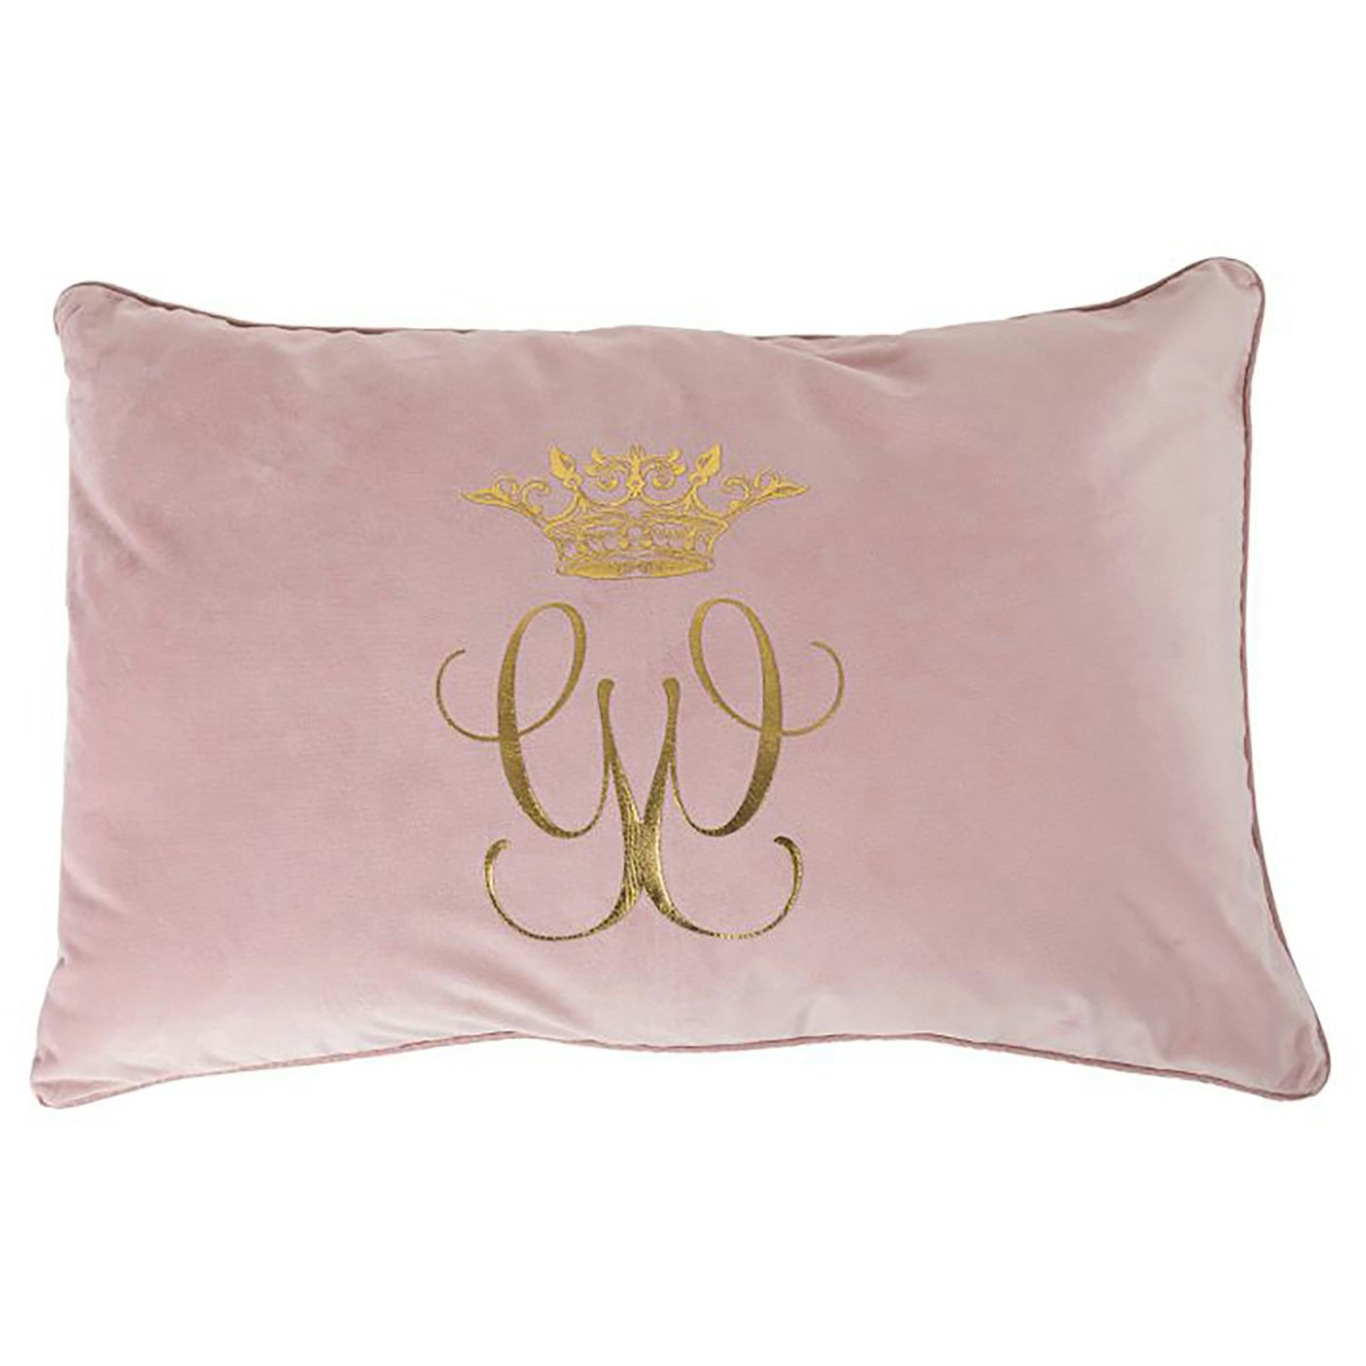 Royal Tyynynpäällinen Pinkki, 40x60 cm